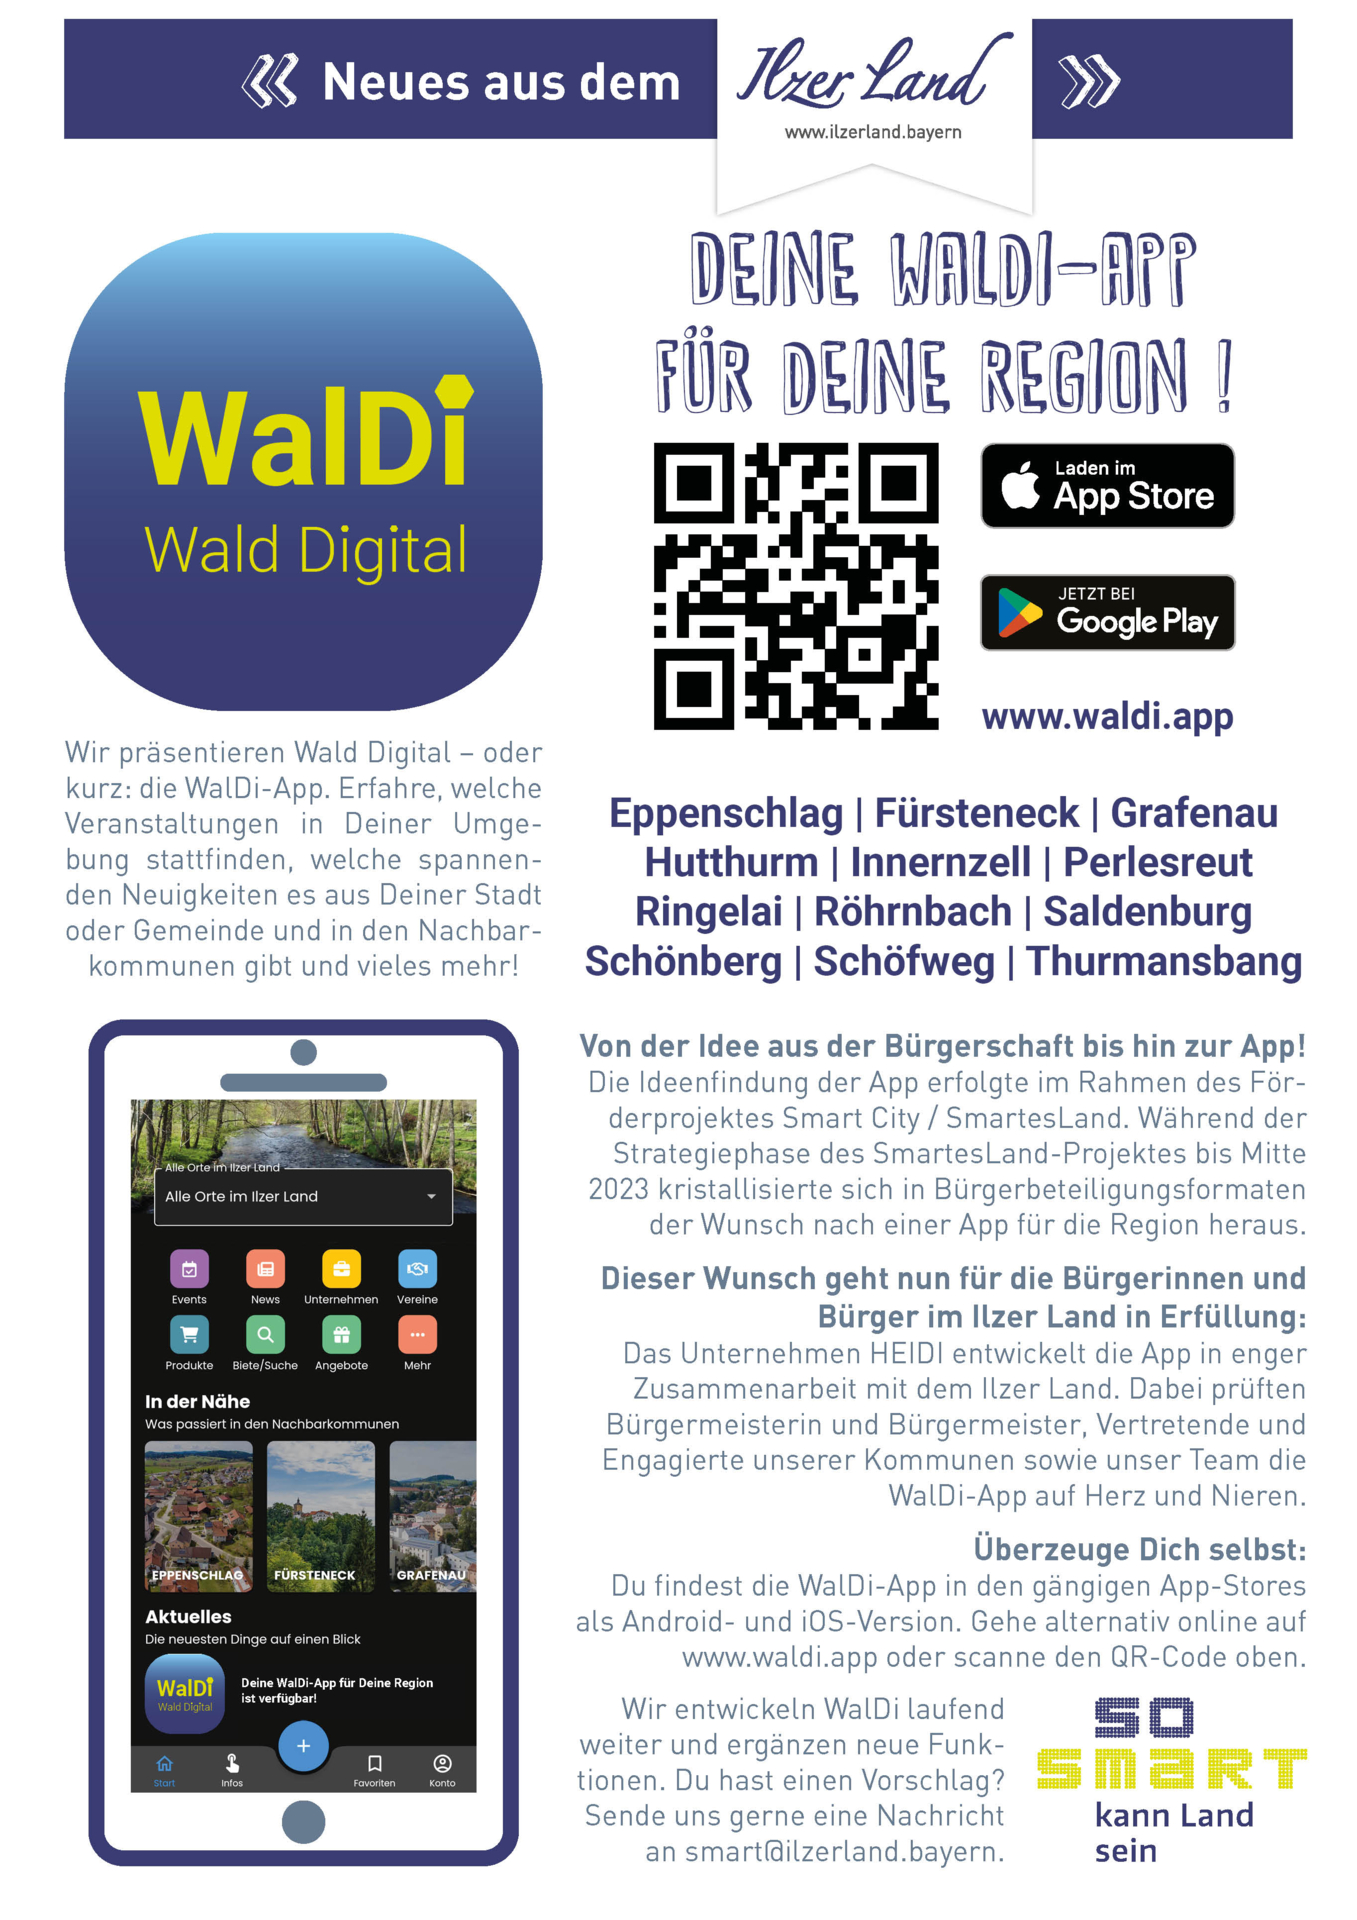 WaldiApp